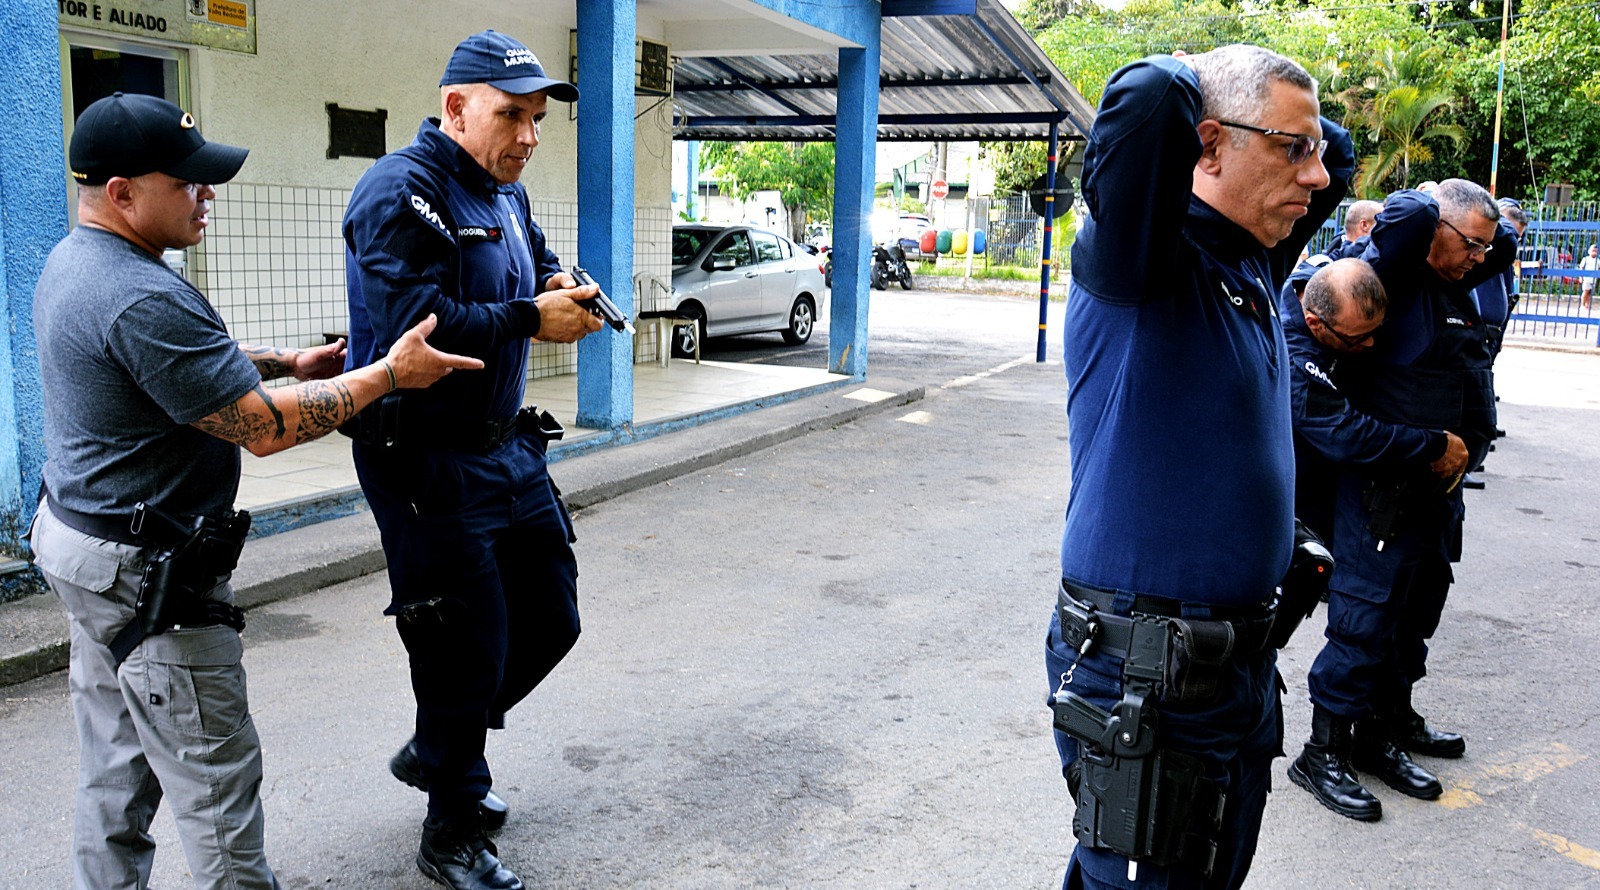 Guardas municipais de Volta Redonda passam por treinamento de armamento e tiro